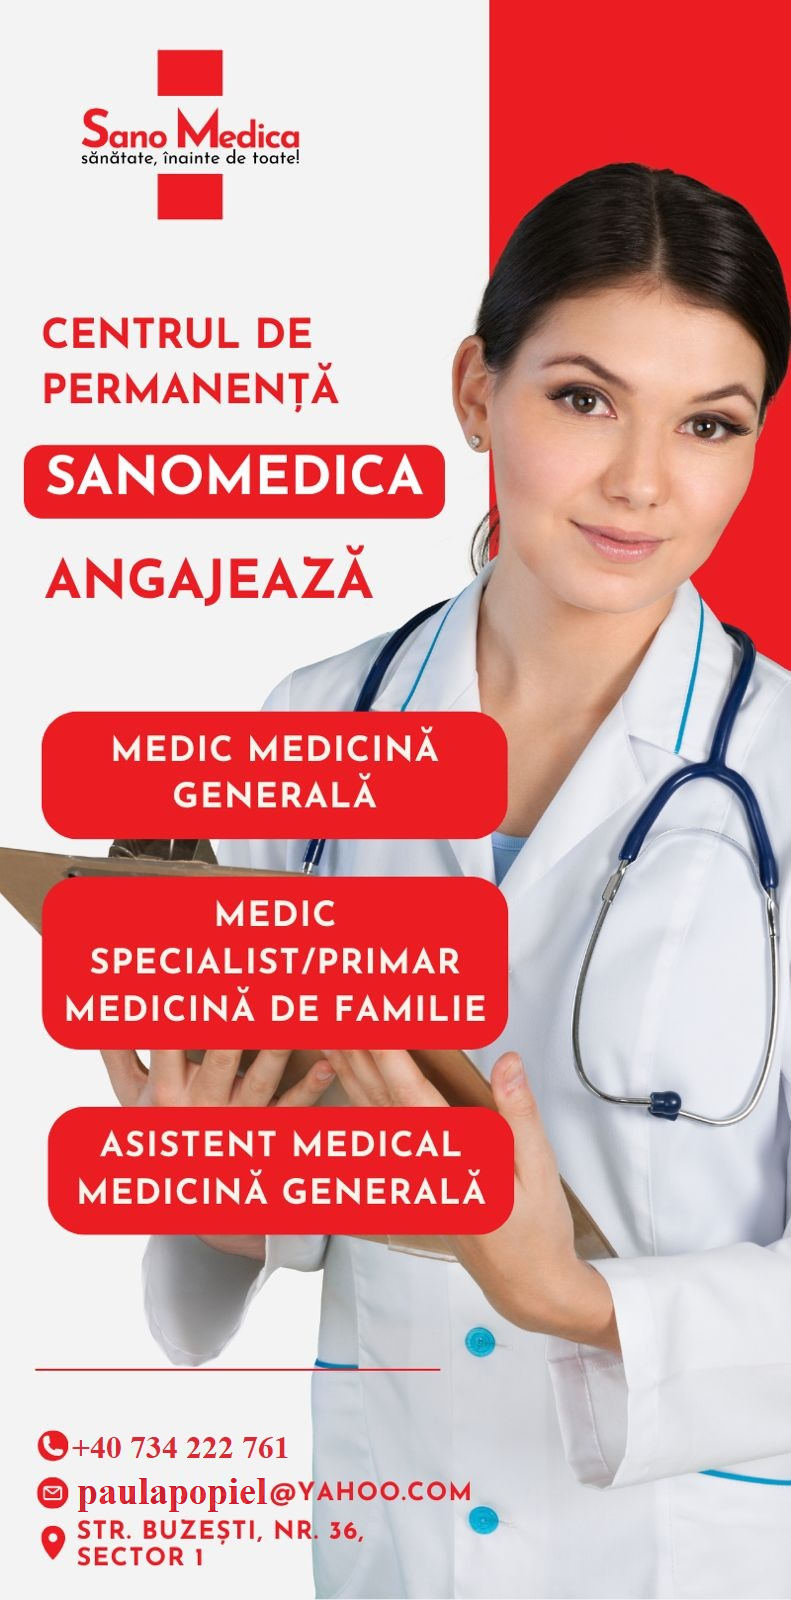 Sano Medica Cauta Medici si Asistenti Medicali Generalisti Pentru Centru de Permanenta